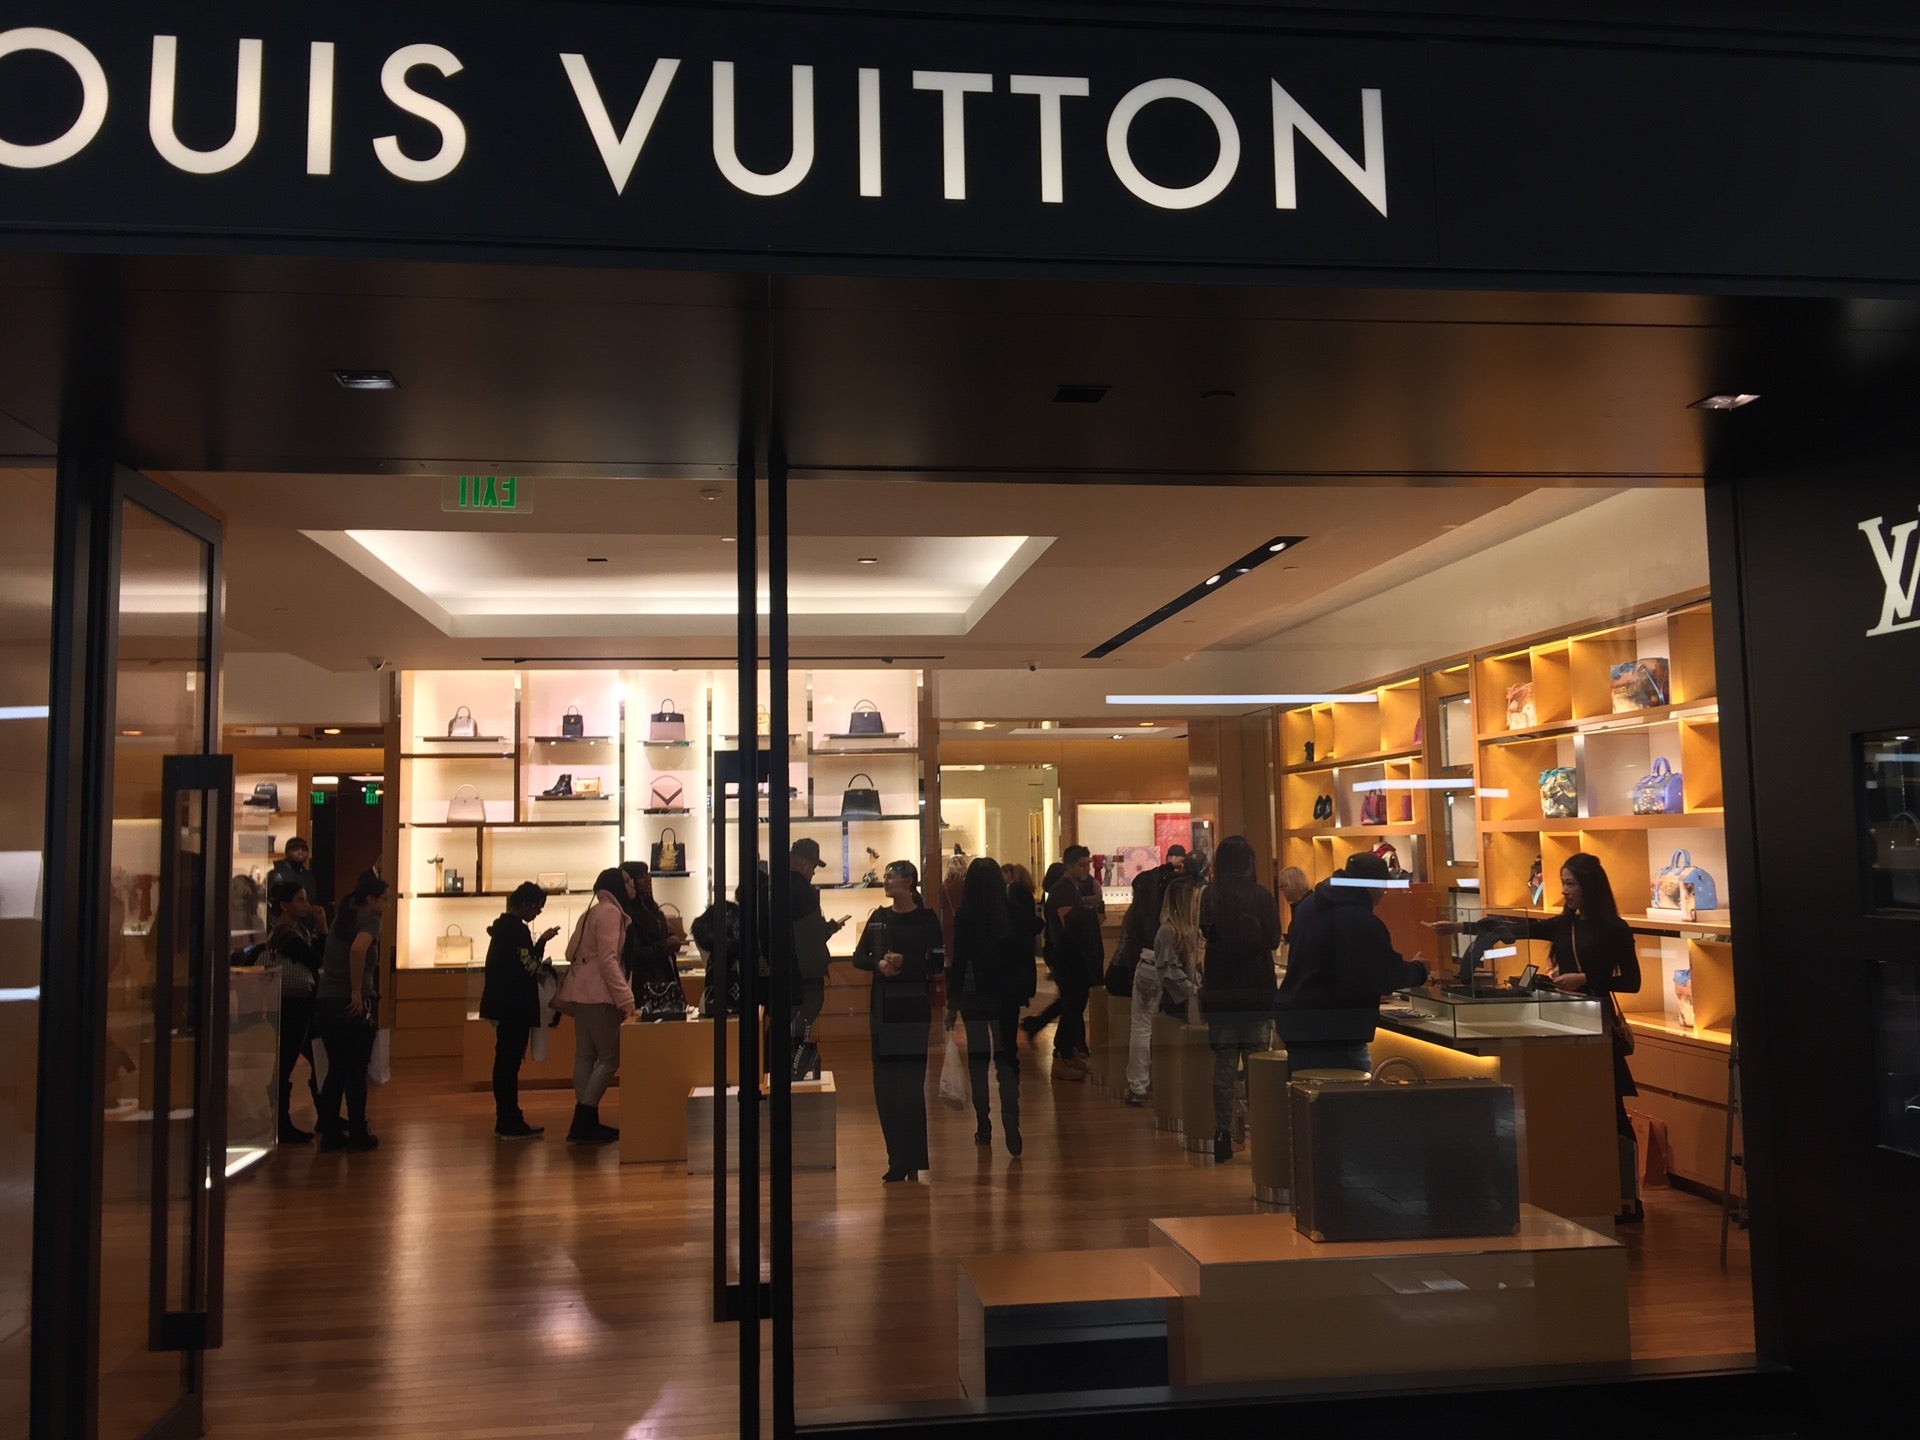 Louis Vuitton Short Hills Mall Phone